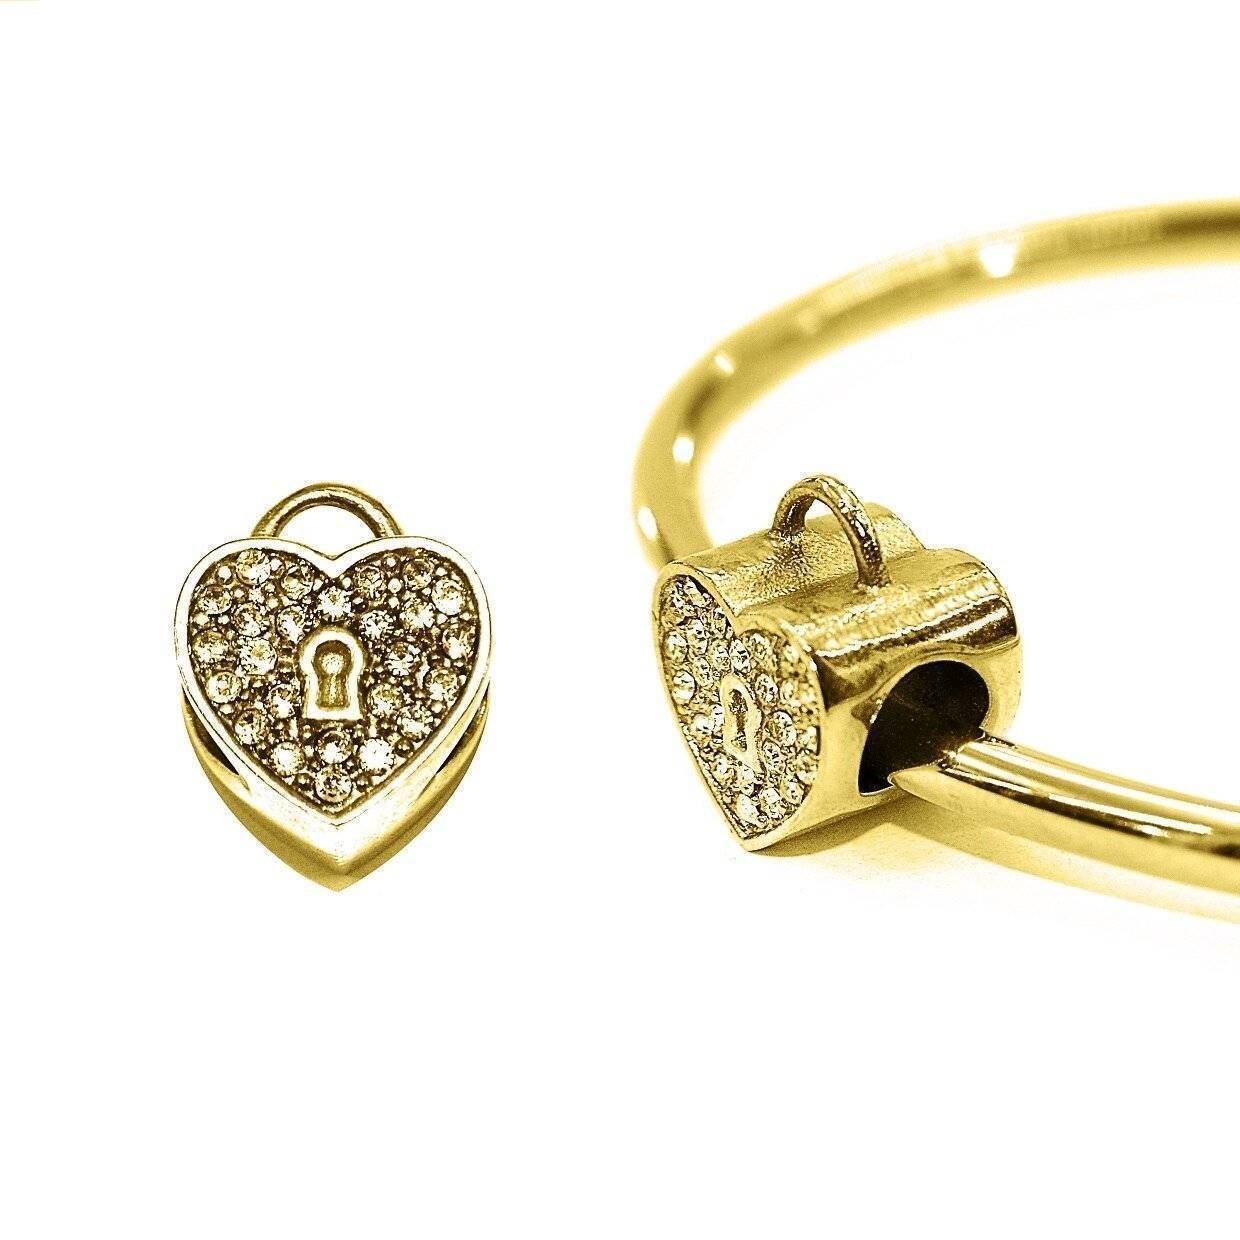 Diamond Heart Charm for Moments Bracelet - Moments Charm Bracelets by Belle Fever